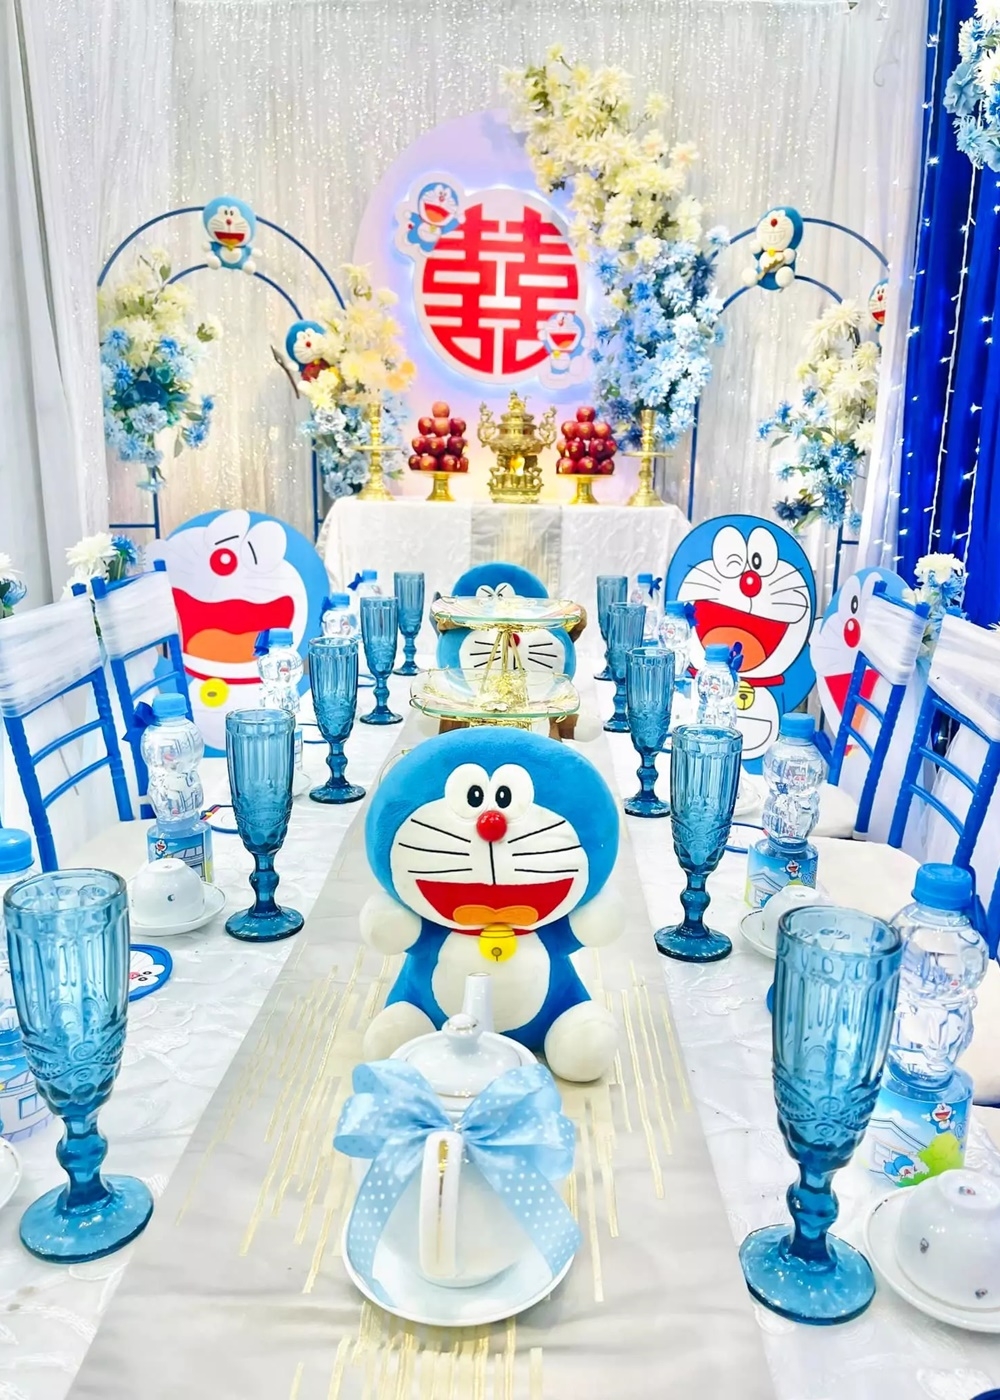 Cô dâu - chú rể Bạc Liêu mang tuổi thơ vào đám cưới ngập tràn Doraemon